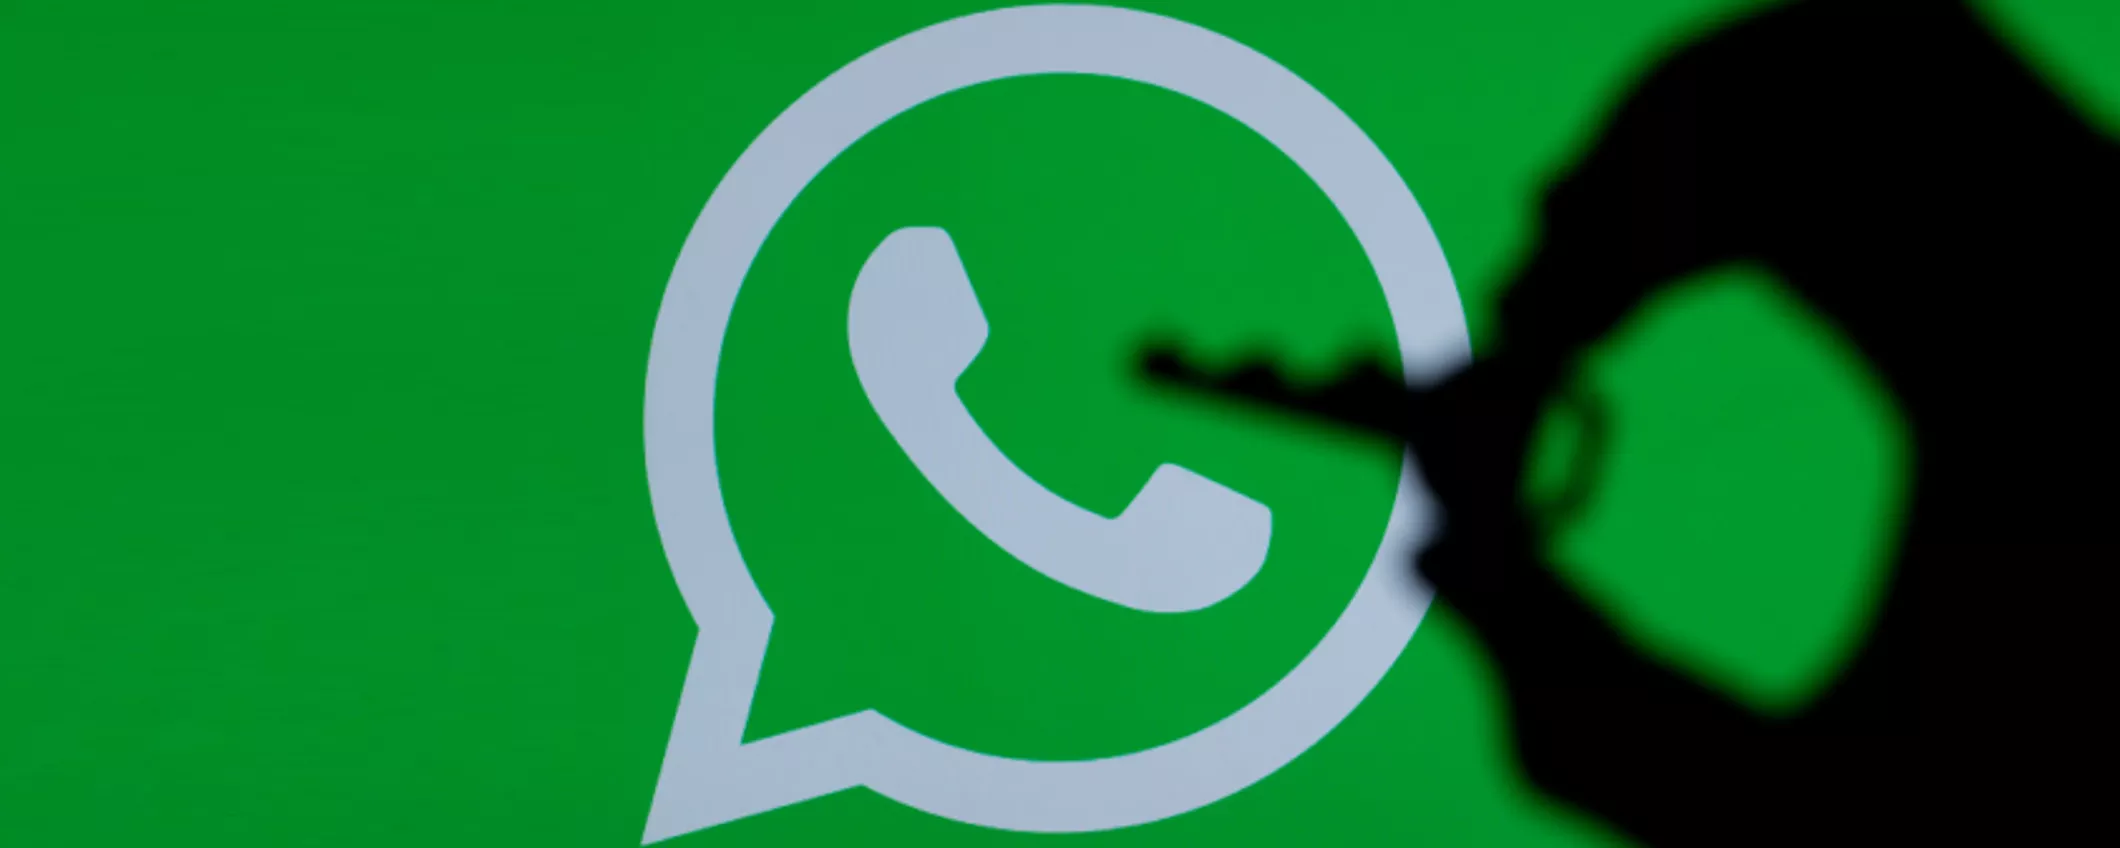 WhatsApp: chiamate ancora più sicure grazie a questo TRUCCO